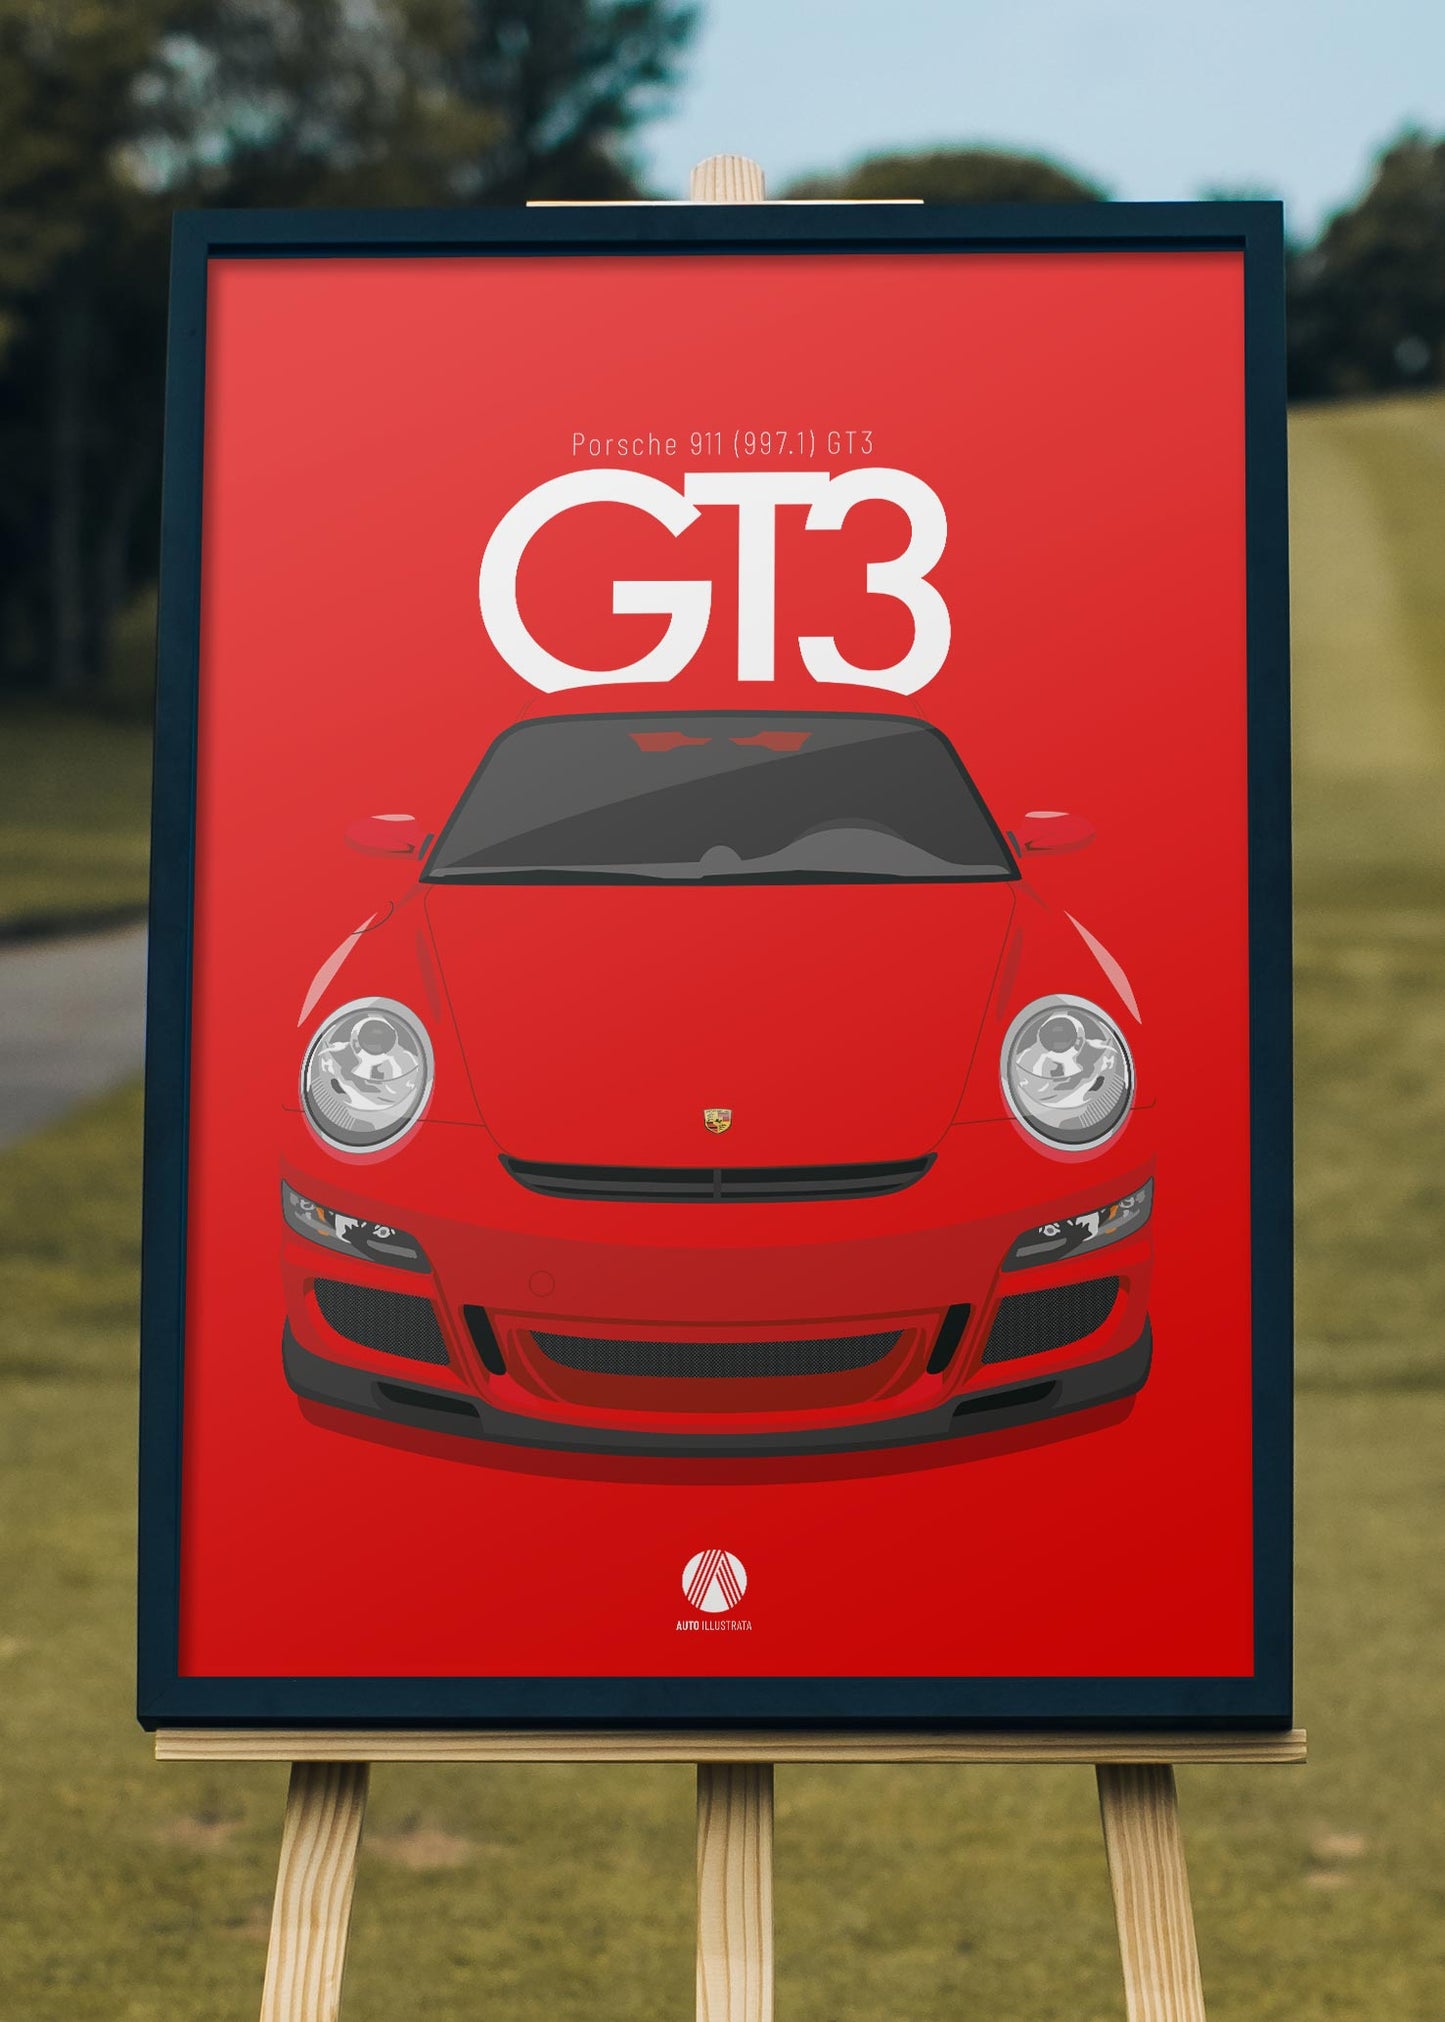 2006 Porsche 911 (997.1) GT3 Guards Red - poster print